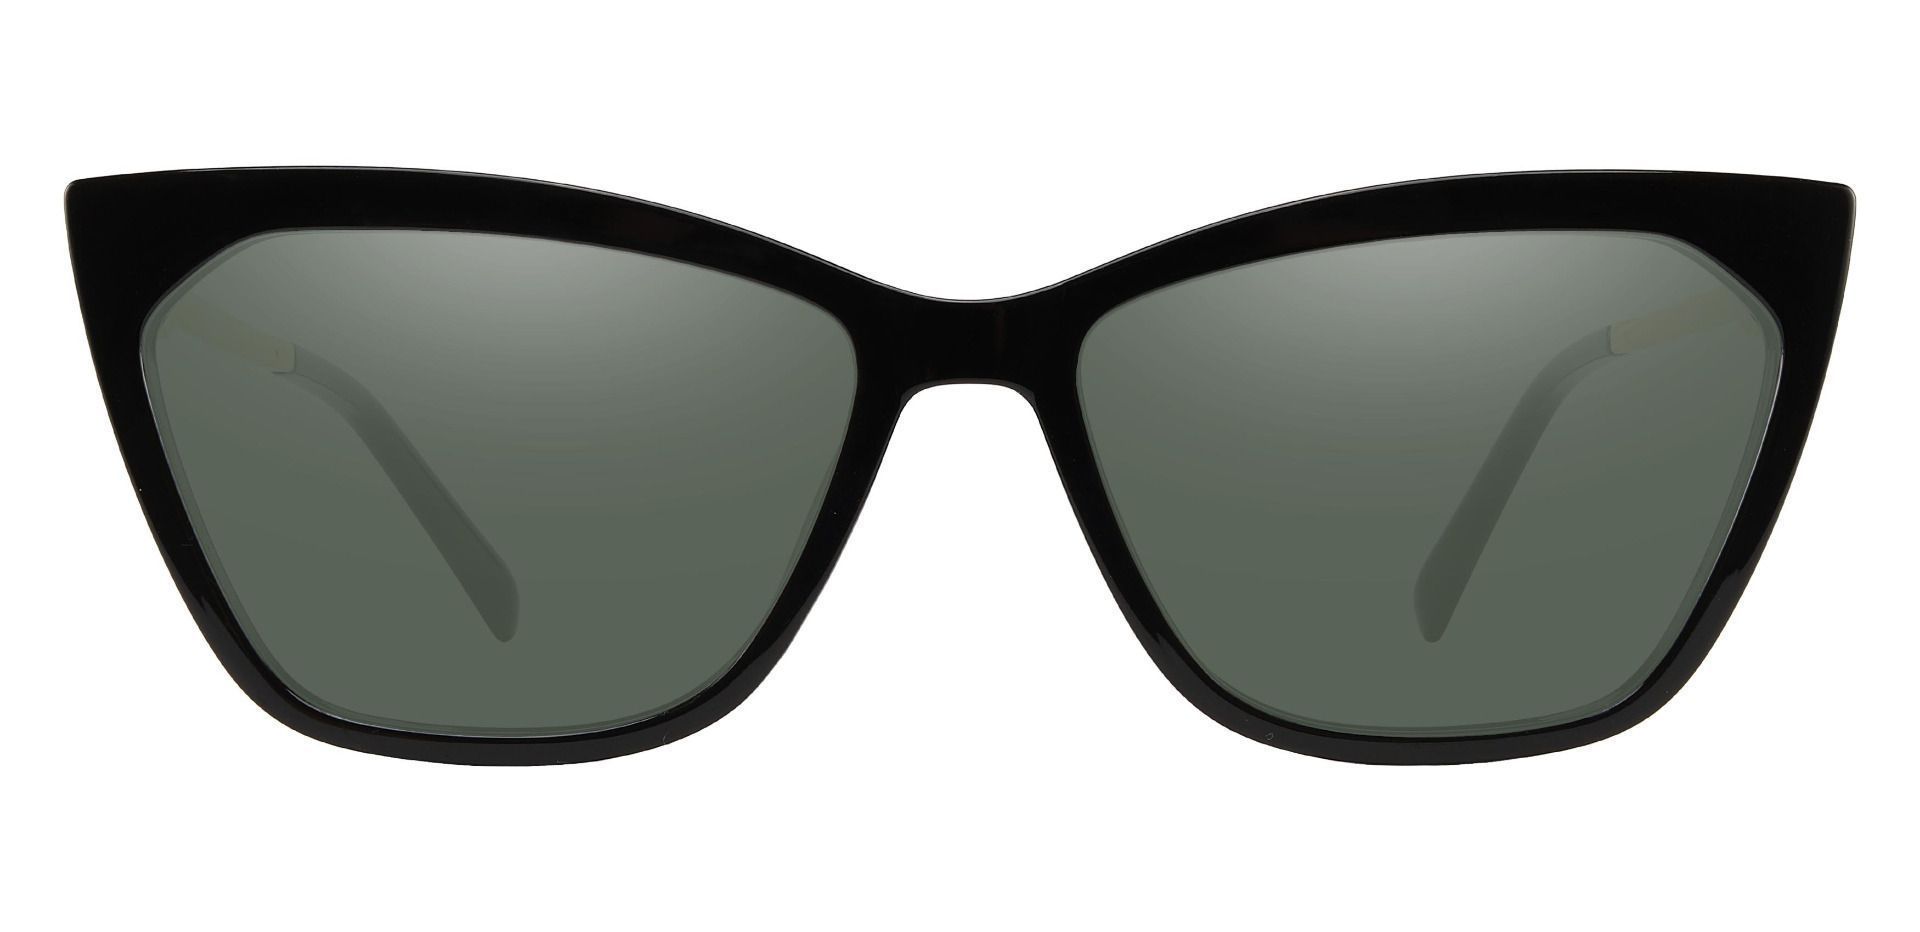 Addison Cat Eye Reading Sunglasses - Black Frame With Green Lenses